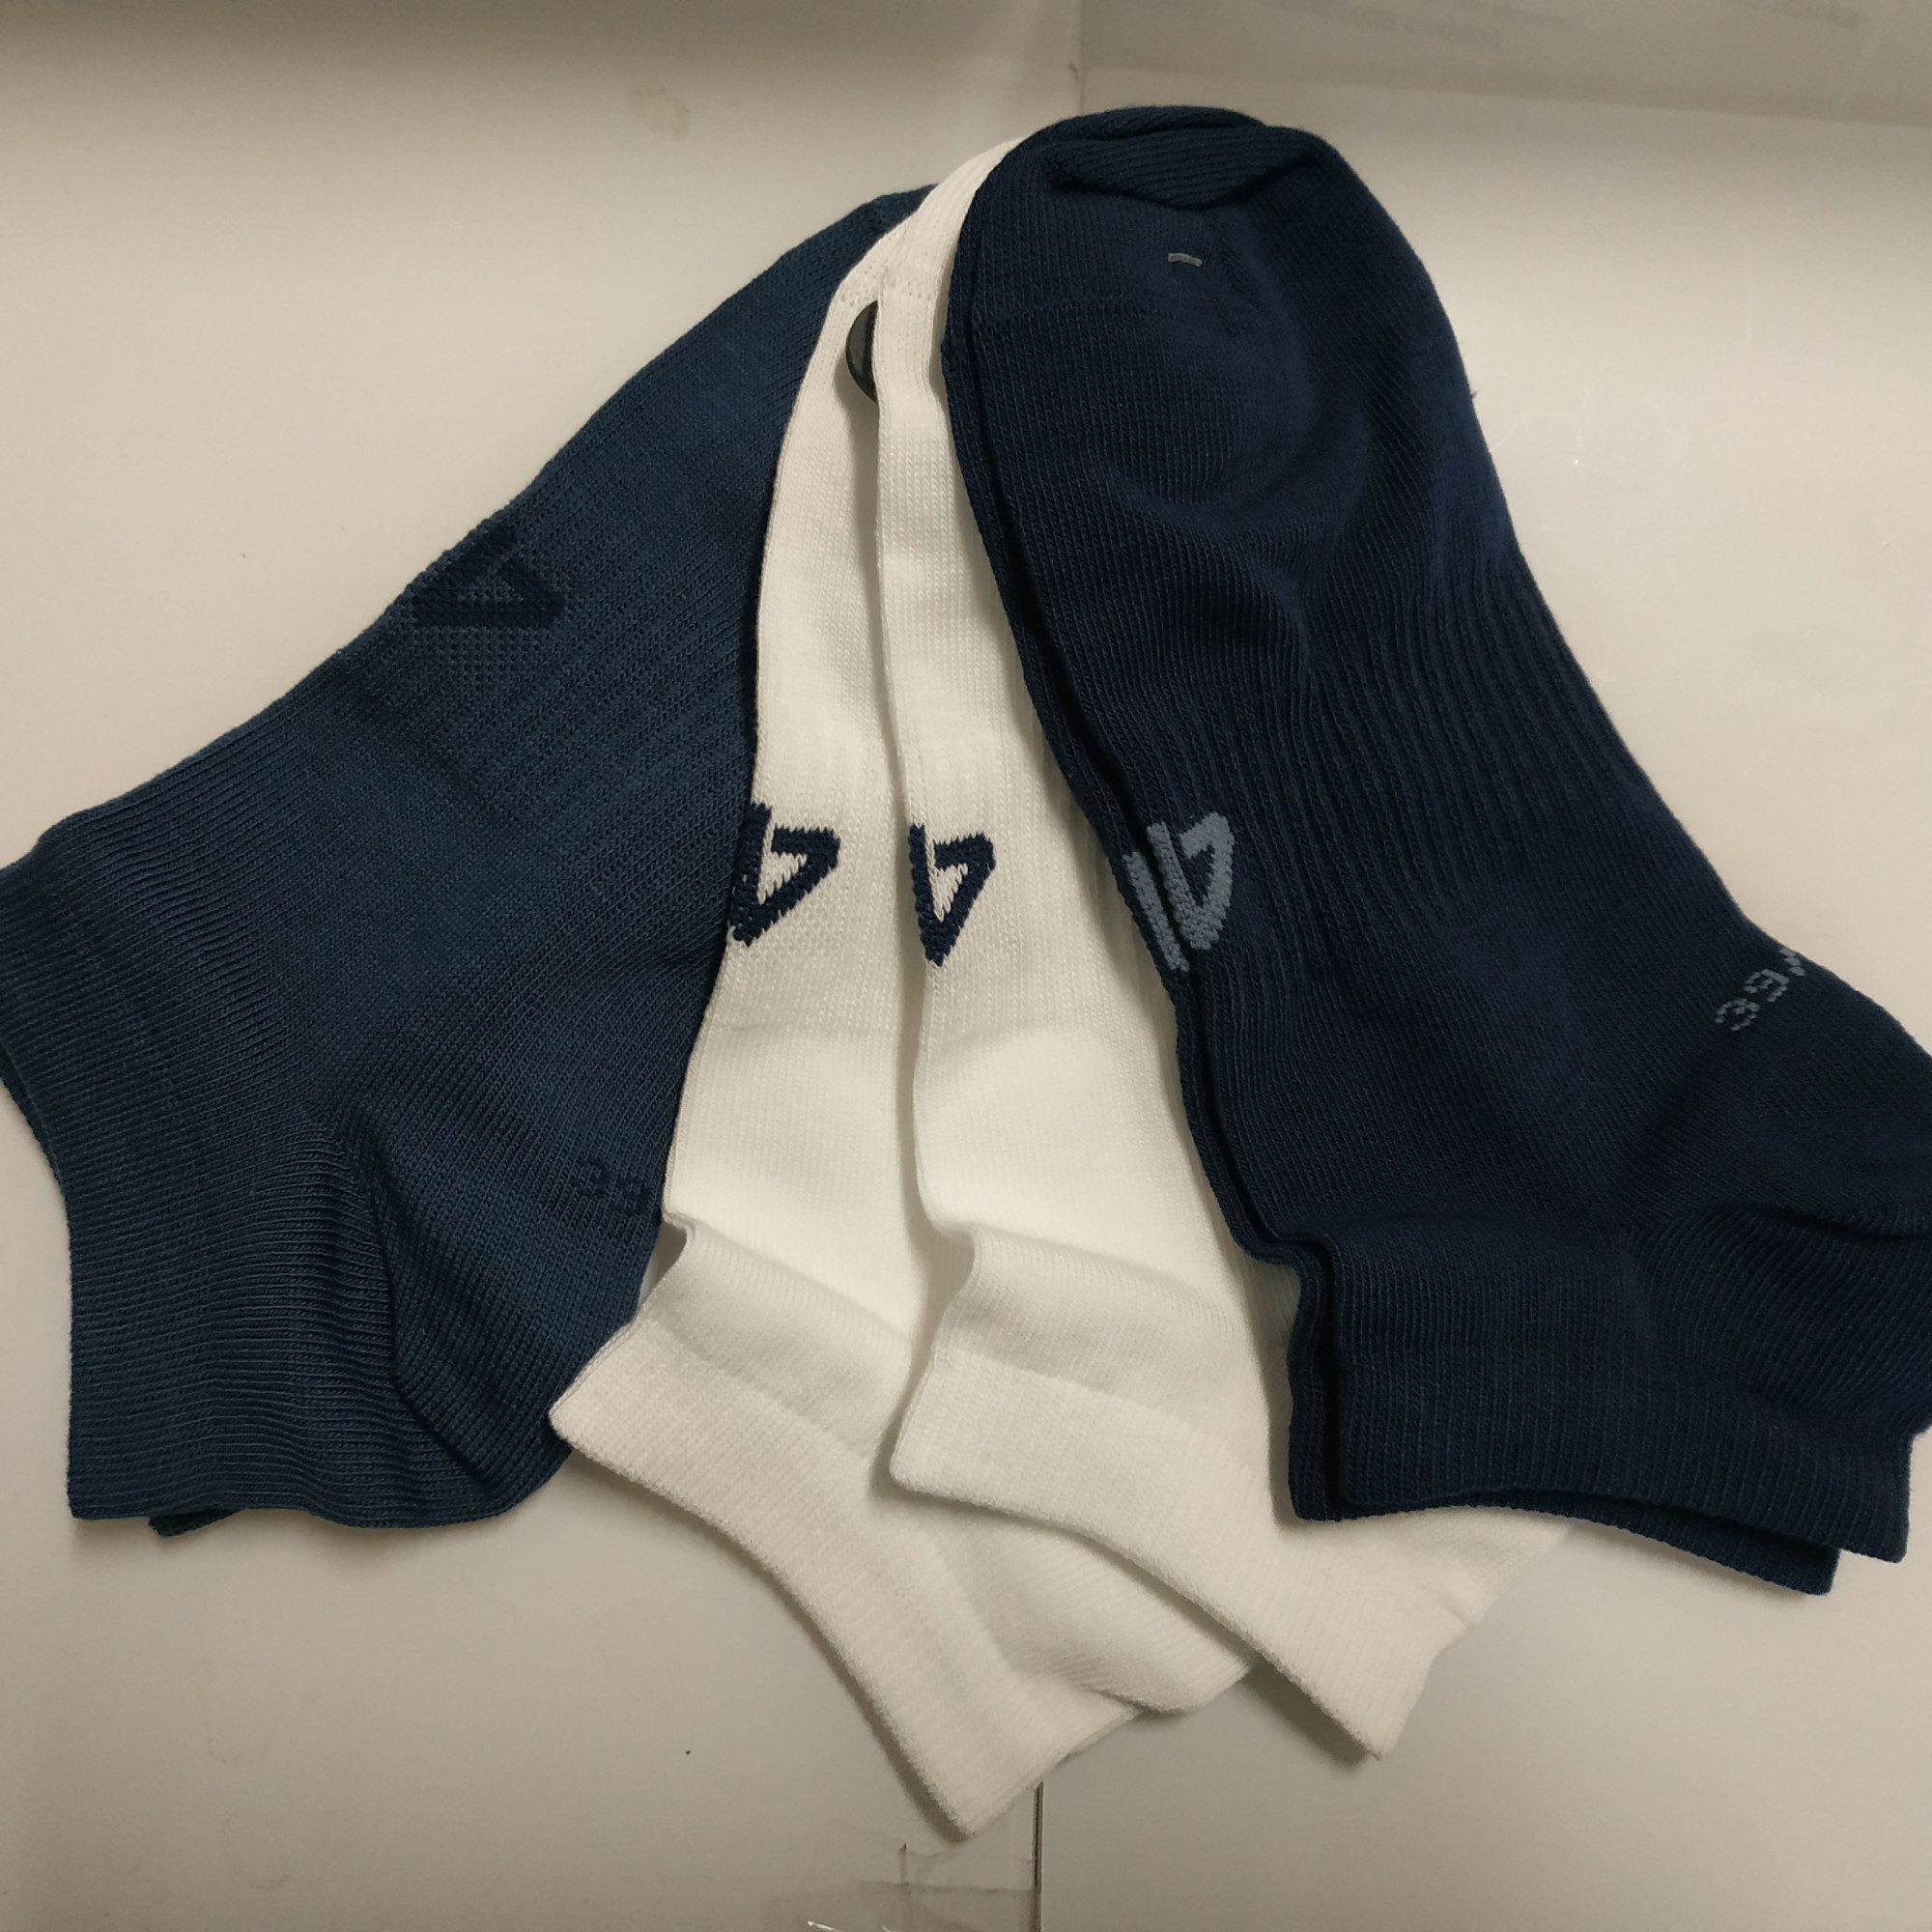 Pánské kotníkové ponožky 4F SOM301 Modré_Bílé (3 páry) Modrá 39-42